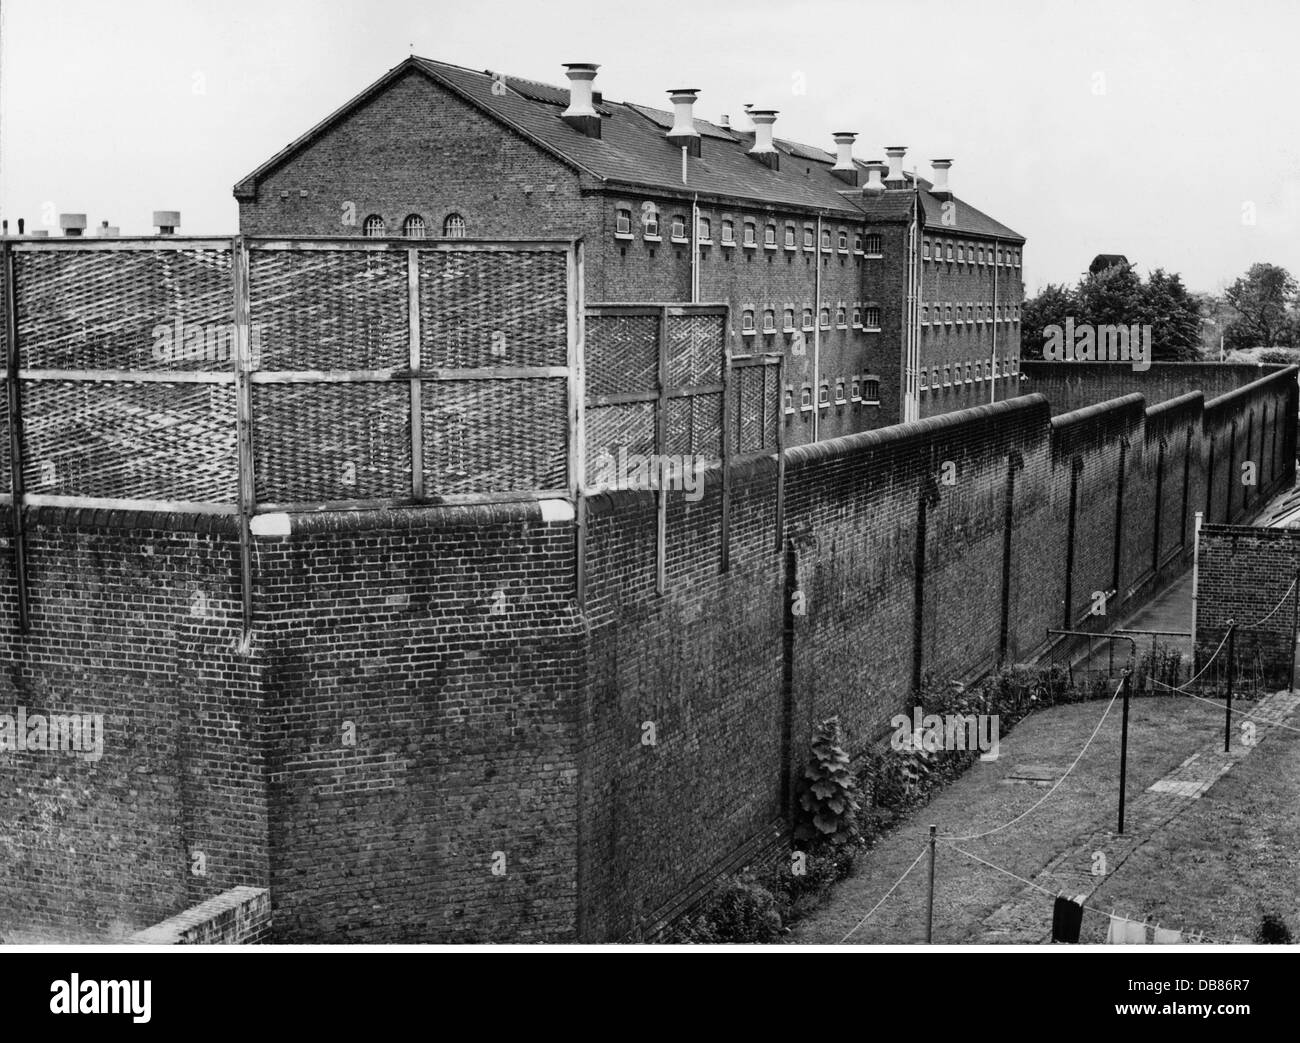 giustizia, sistema penitenziario, custodia, prigione, prigione di Brixton, Londra, vista esterna, 1950 / 1960, diritti aggiuntivi-clearences-non disponibile Foto Stock